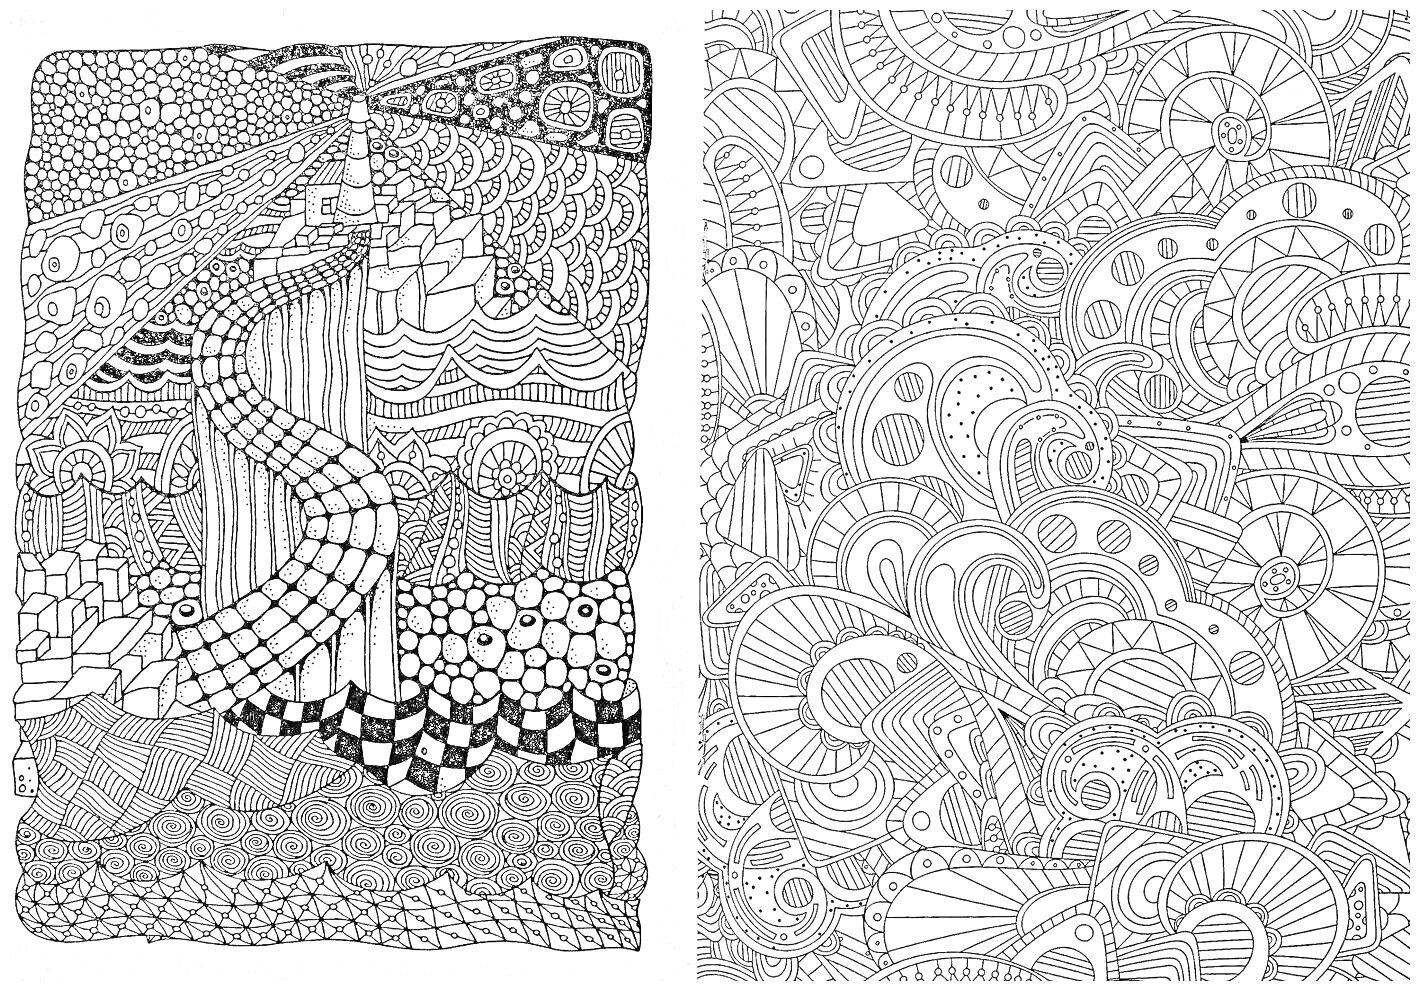 Лабиринт антистресс с причудливыми узорами, абстрактными фигурами и волнообразными линиями